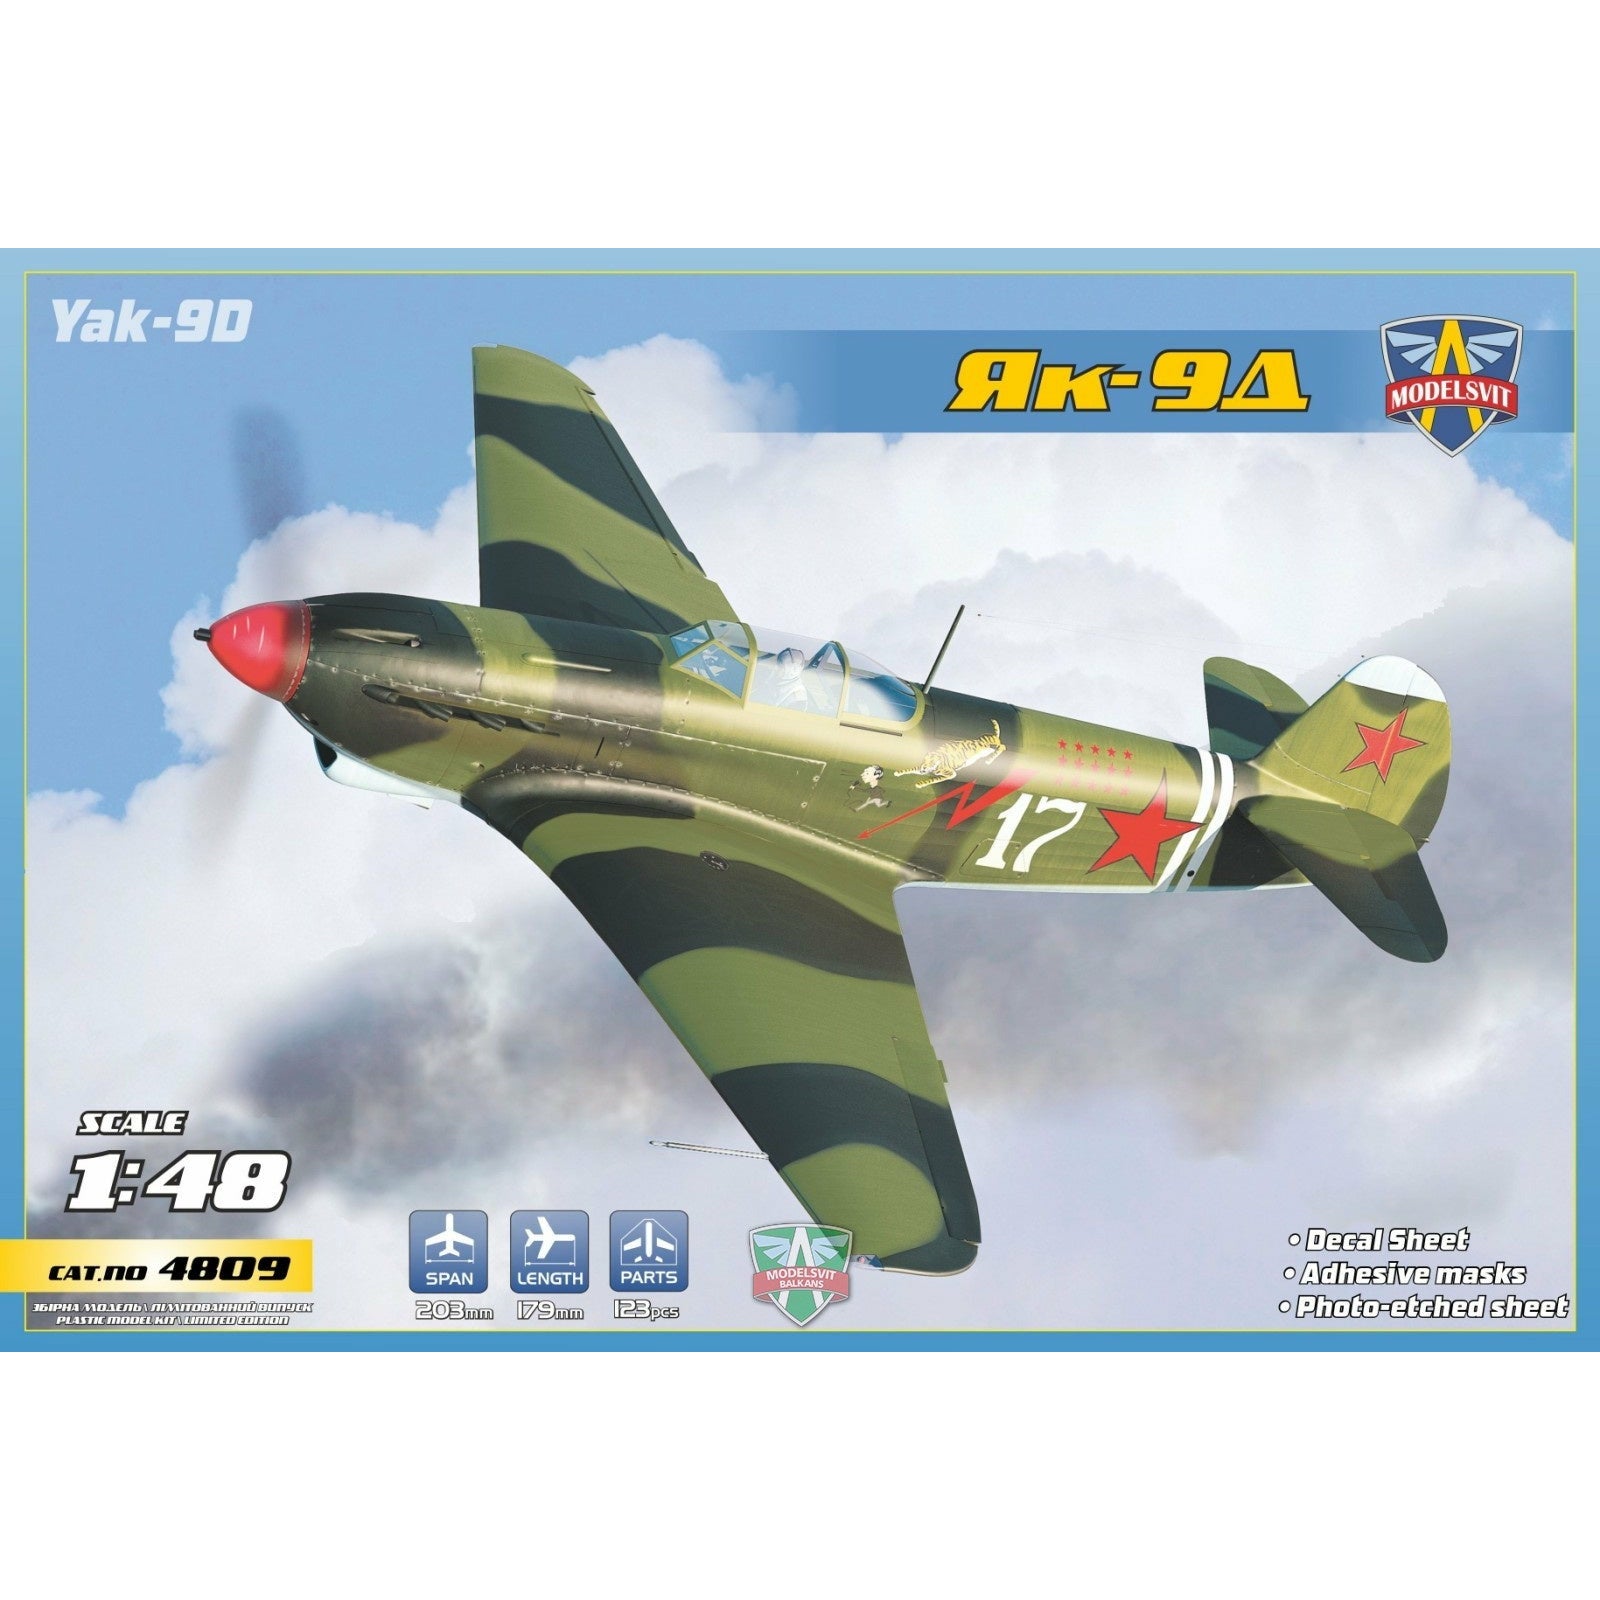 Yak-9D Longe-range WWII fighter 1/48 #4809 by Modelsvit